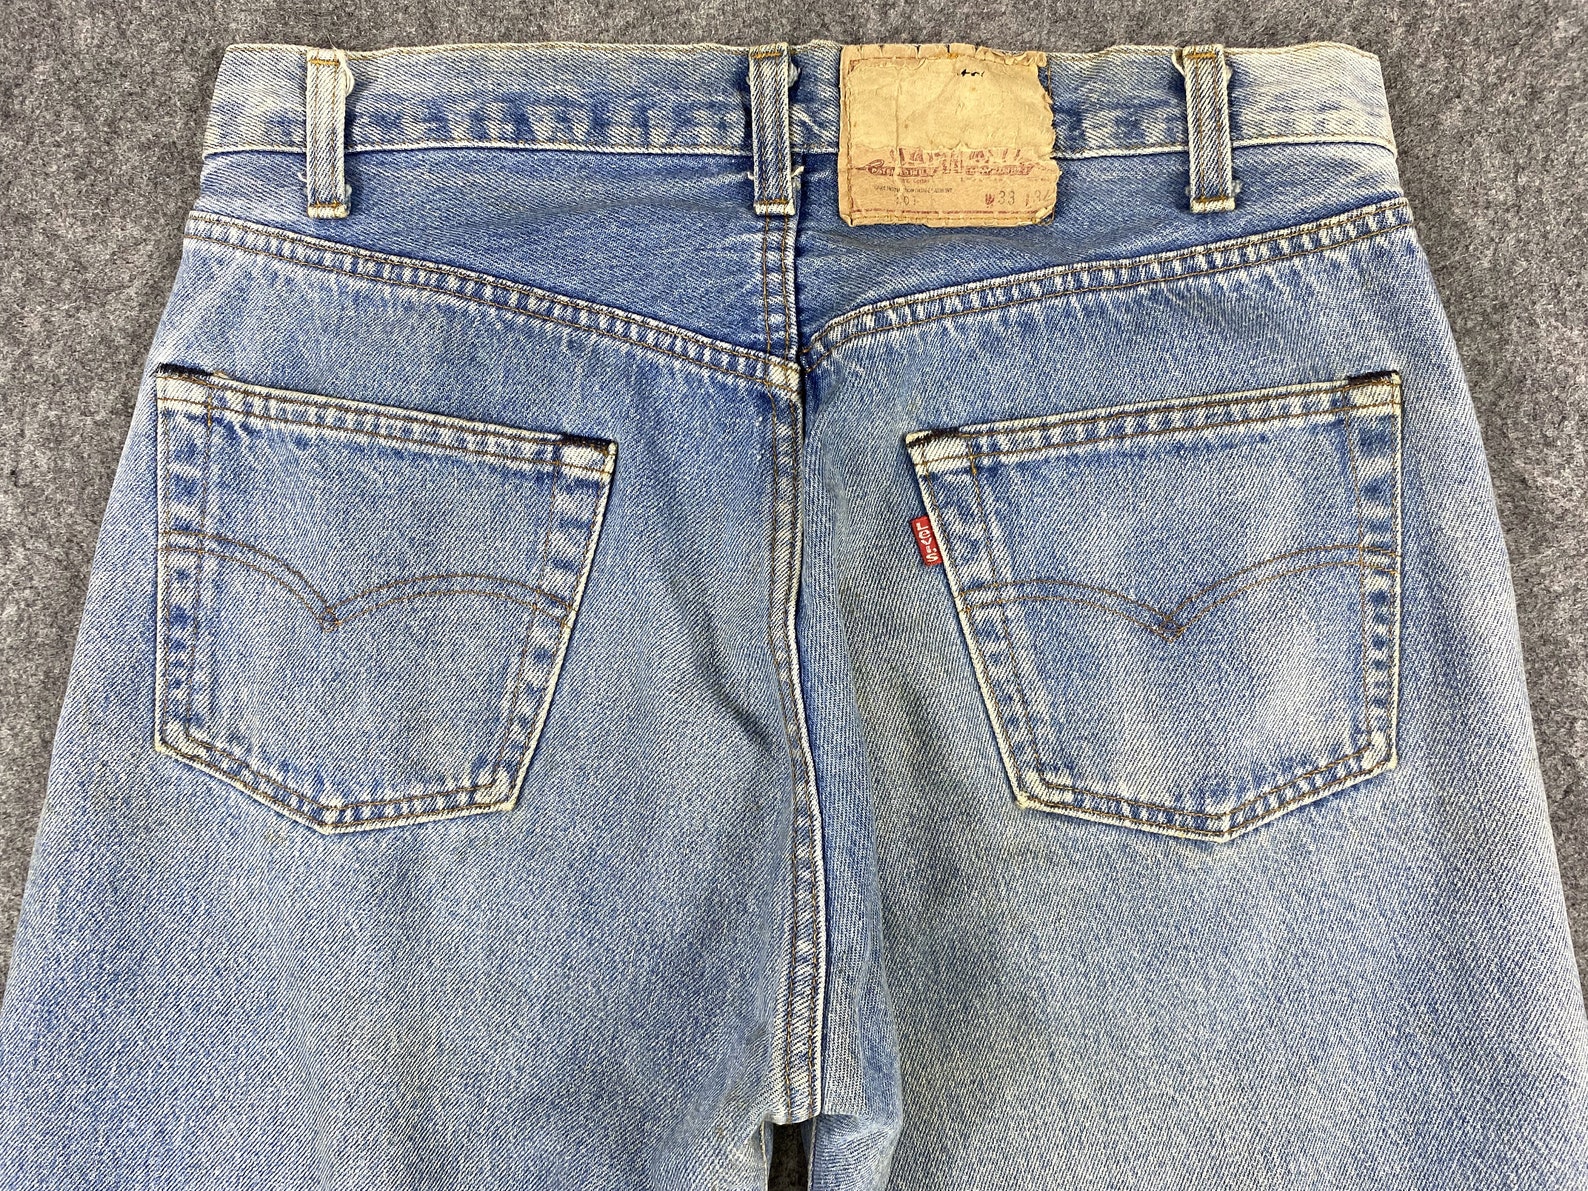 Vintage Levi's 501 Jeans 31x31 Light Wash Denim Red Tab - Etsy UK